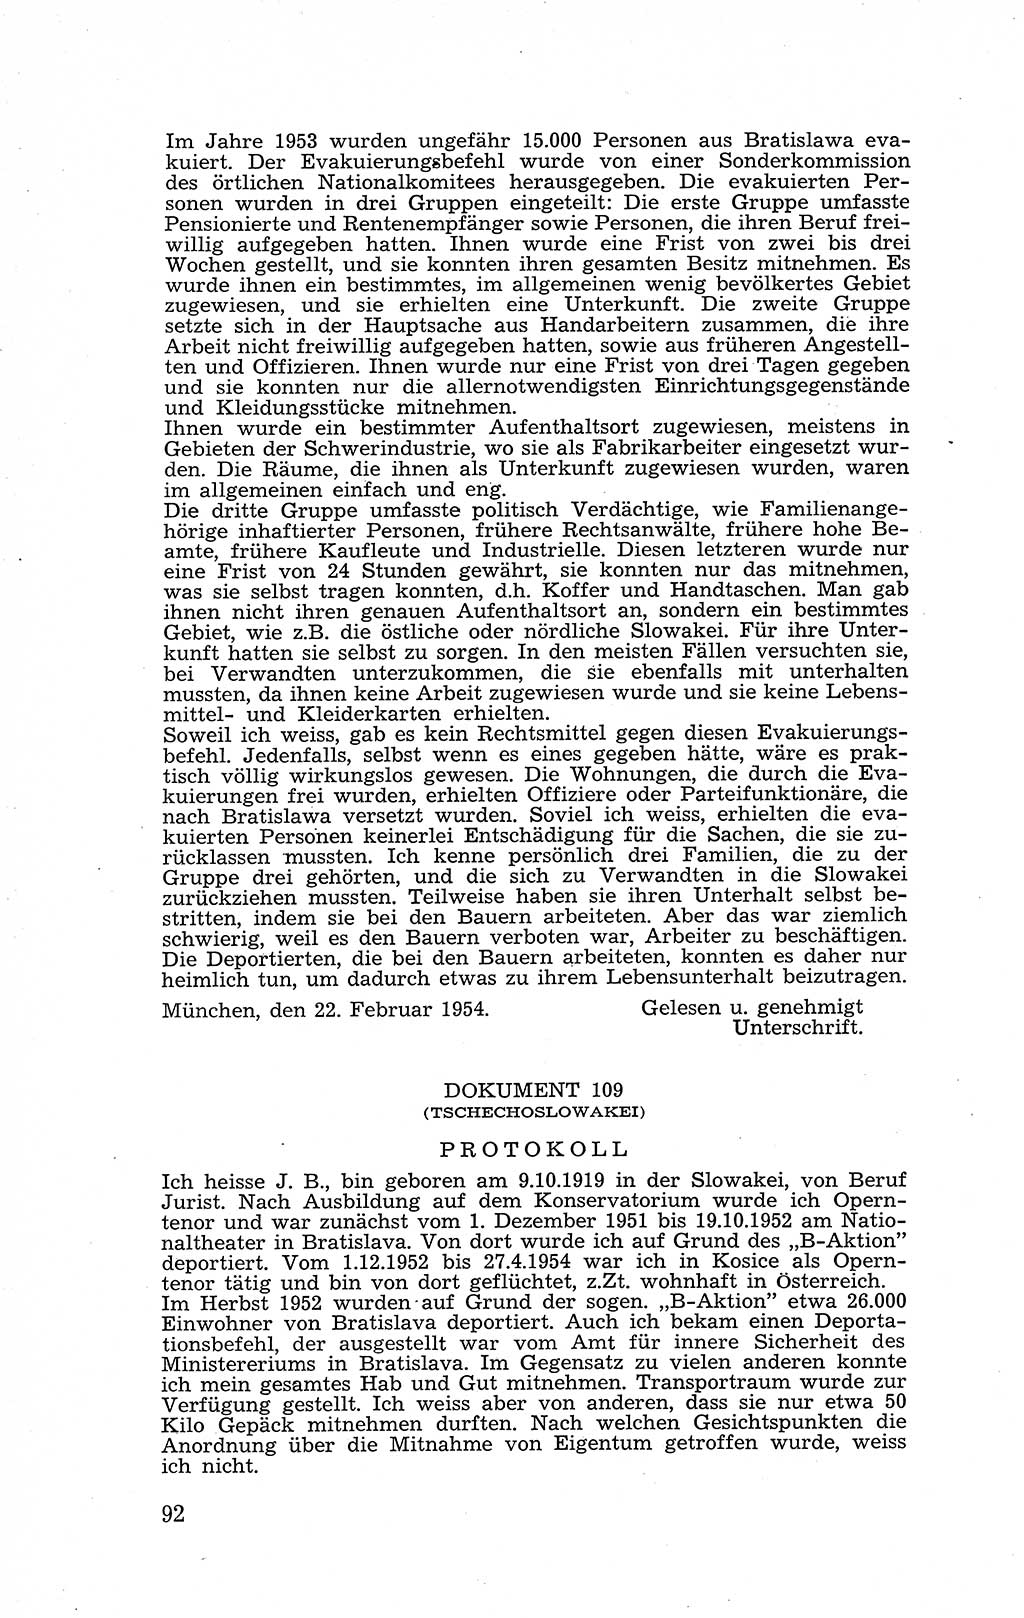 Recht in Fesseln, Dokumente, Internationale Juristen-Kommission [Bundesrepublik Deutschland (BRD)] 1955, Seite 92 (R. Dok. IJK BRD 1955, S. 92)